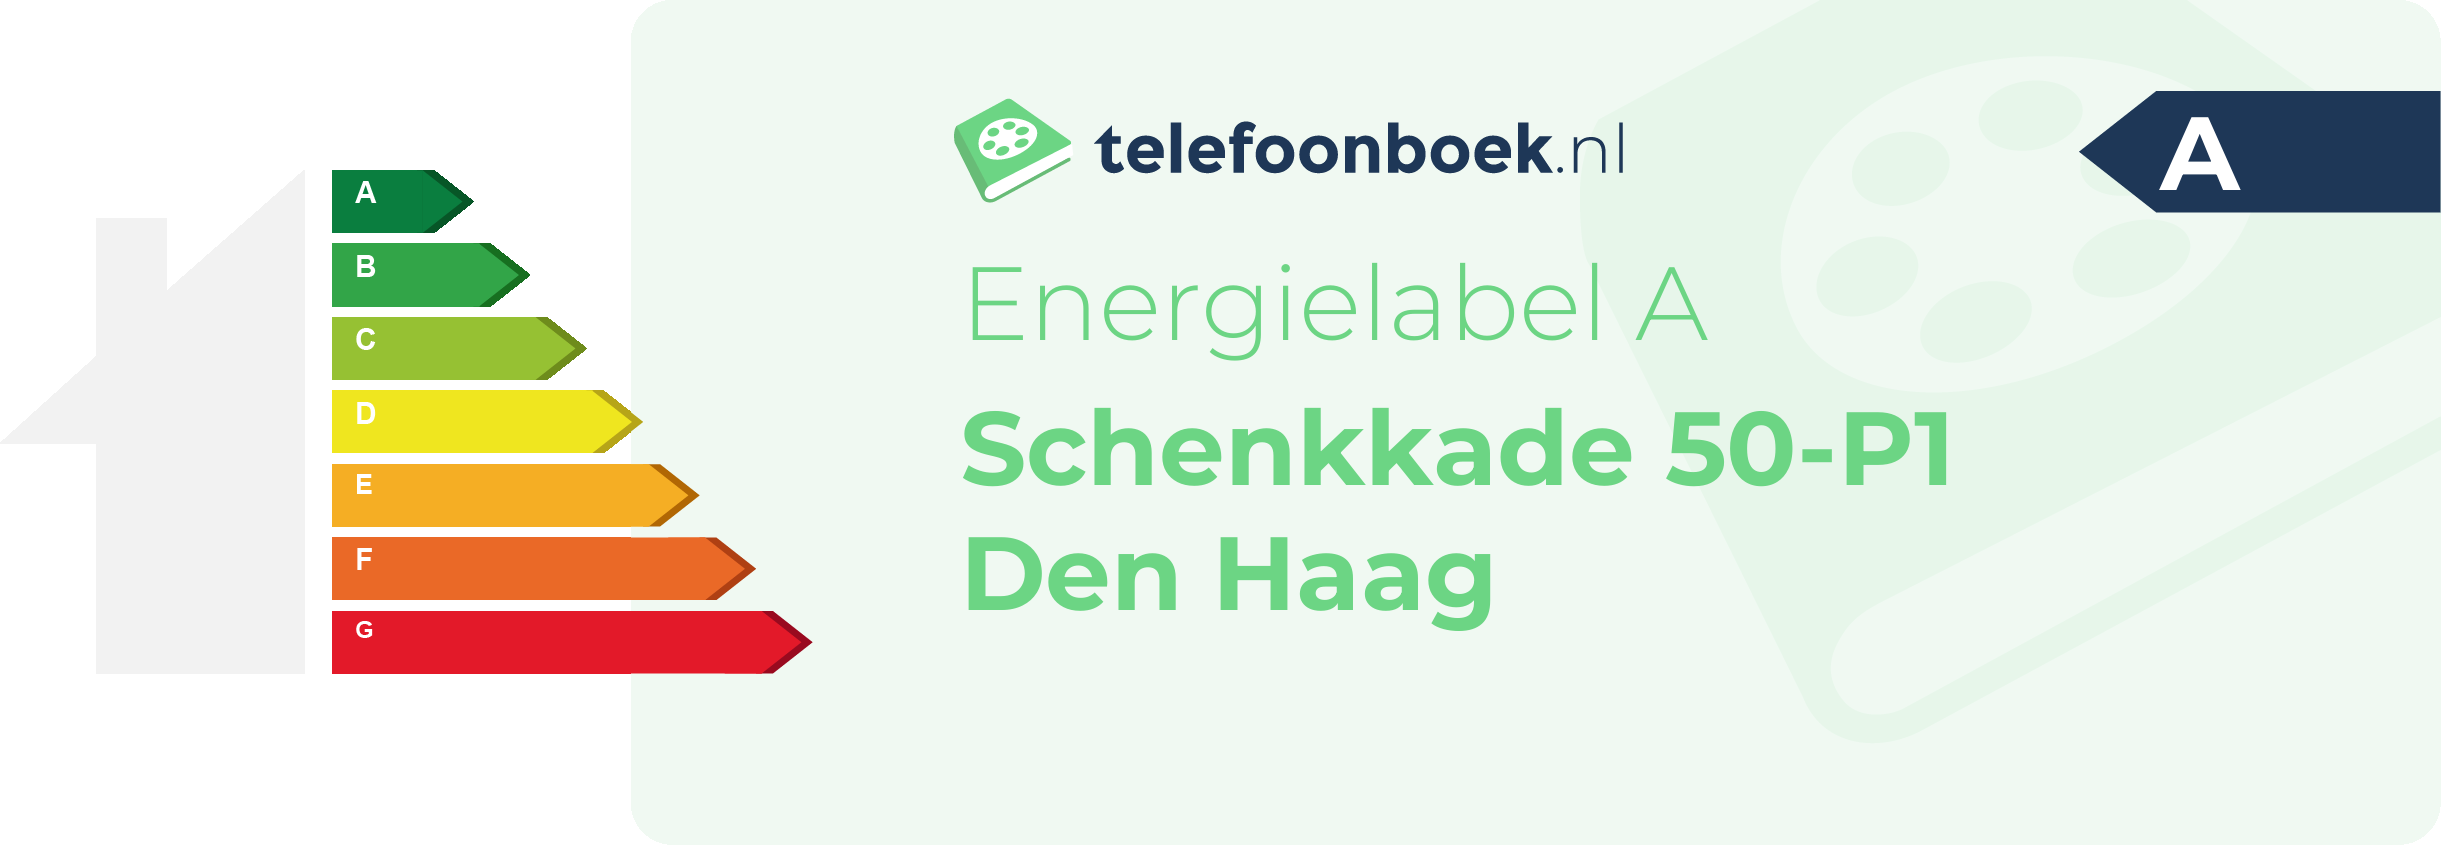 Energielabel Schenkkade 50-P1 Den Haag